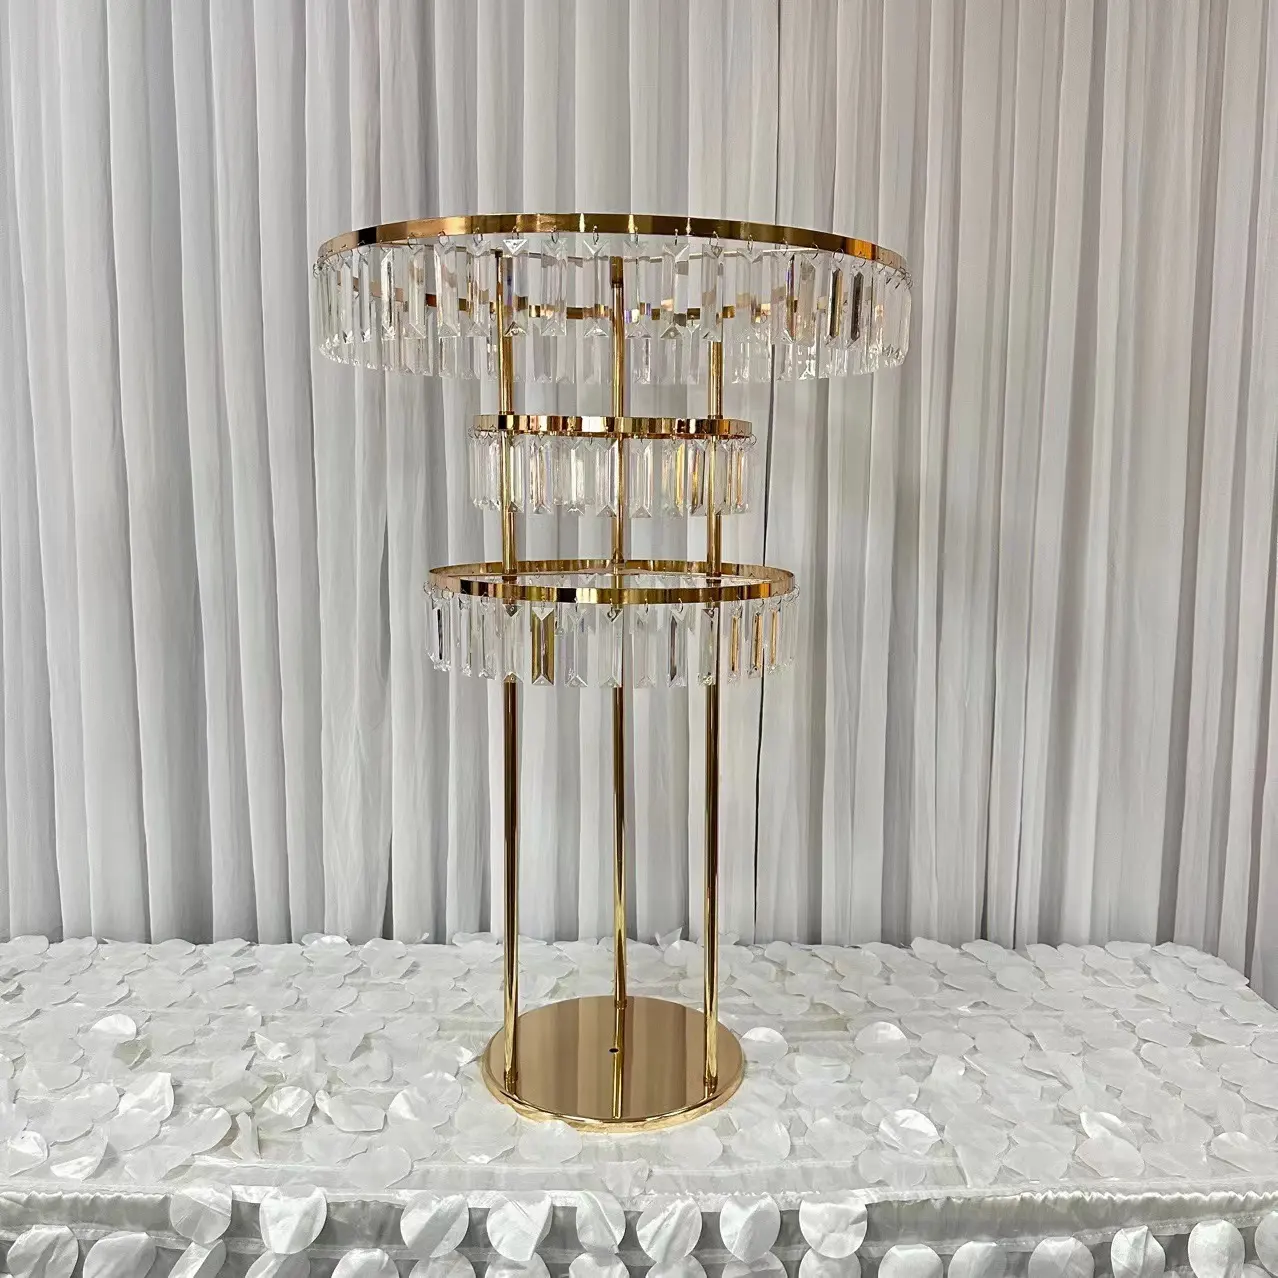 Neues Design Gold Metall Großer Kristall Tisch baum Herzstück Für Hochzeit Tisch dekoration